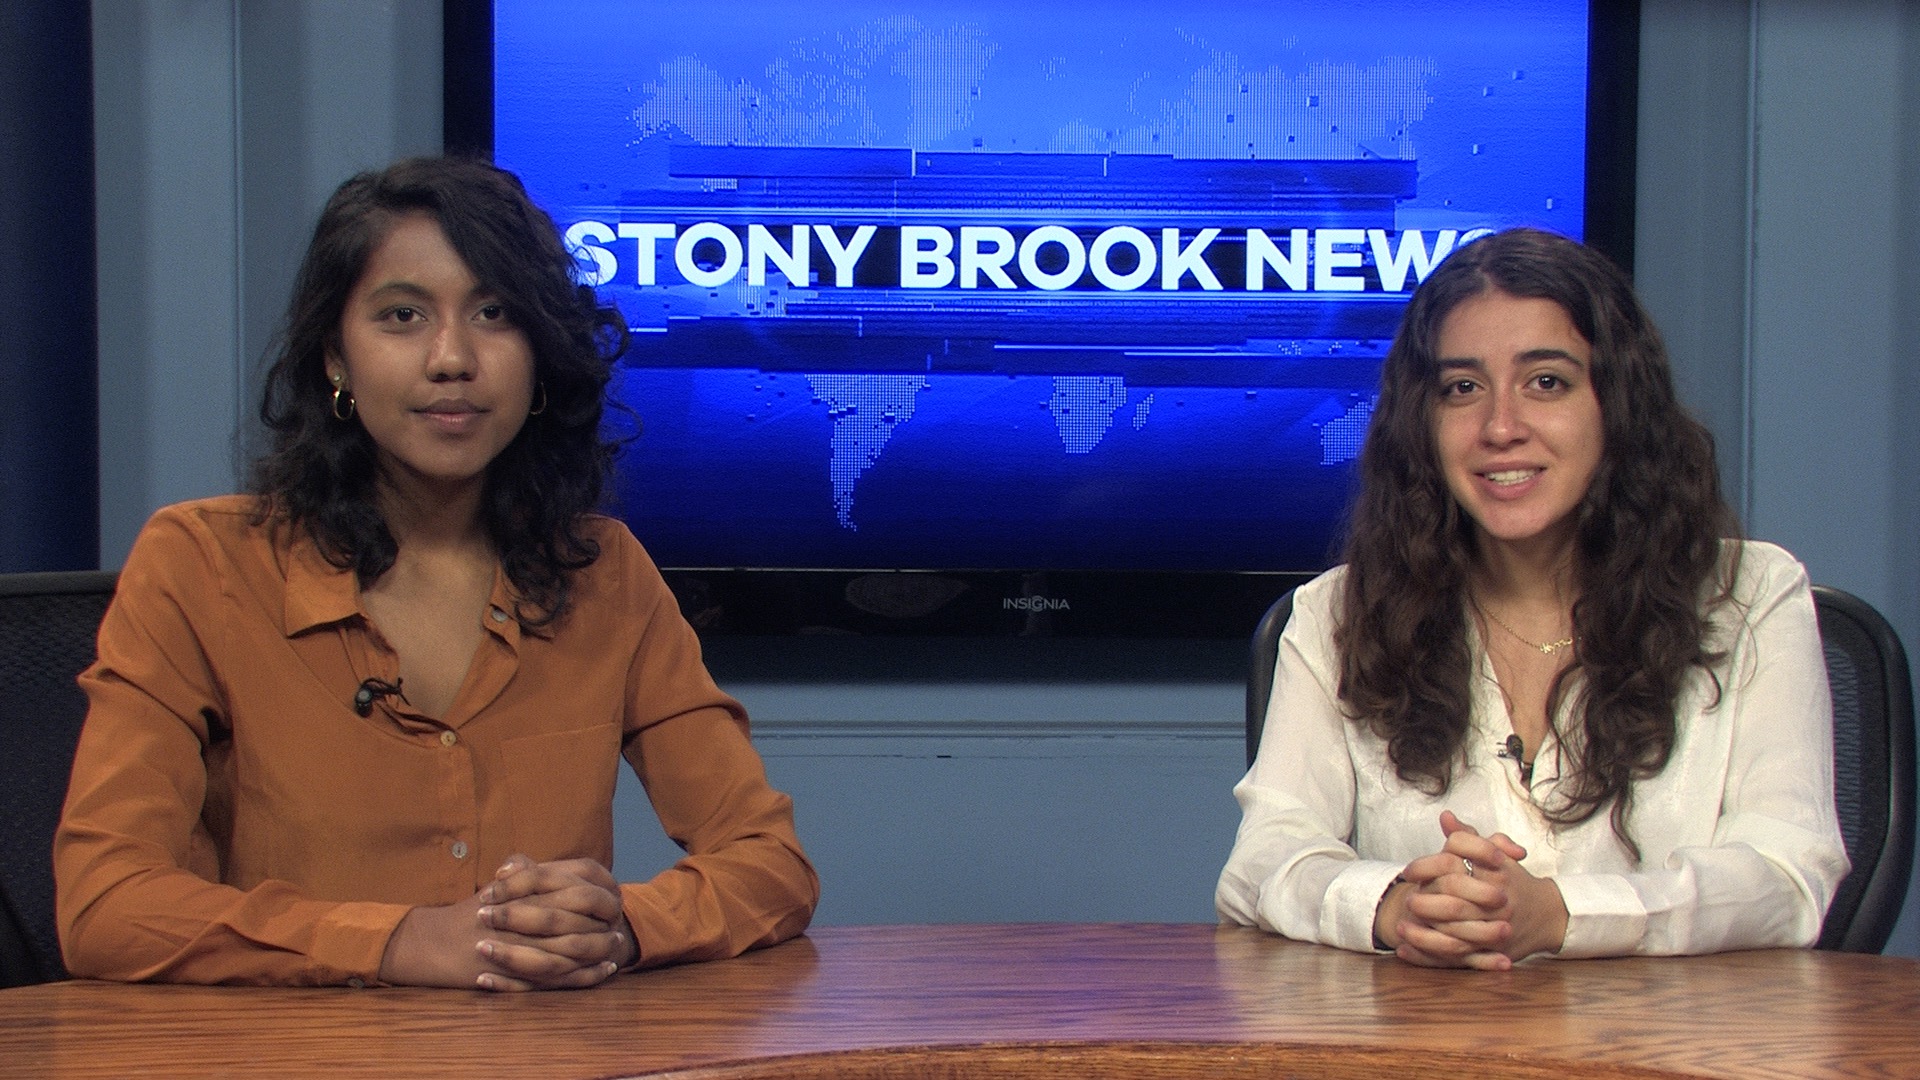 Stony Brook News – November 13, 2019